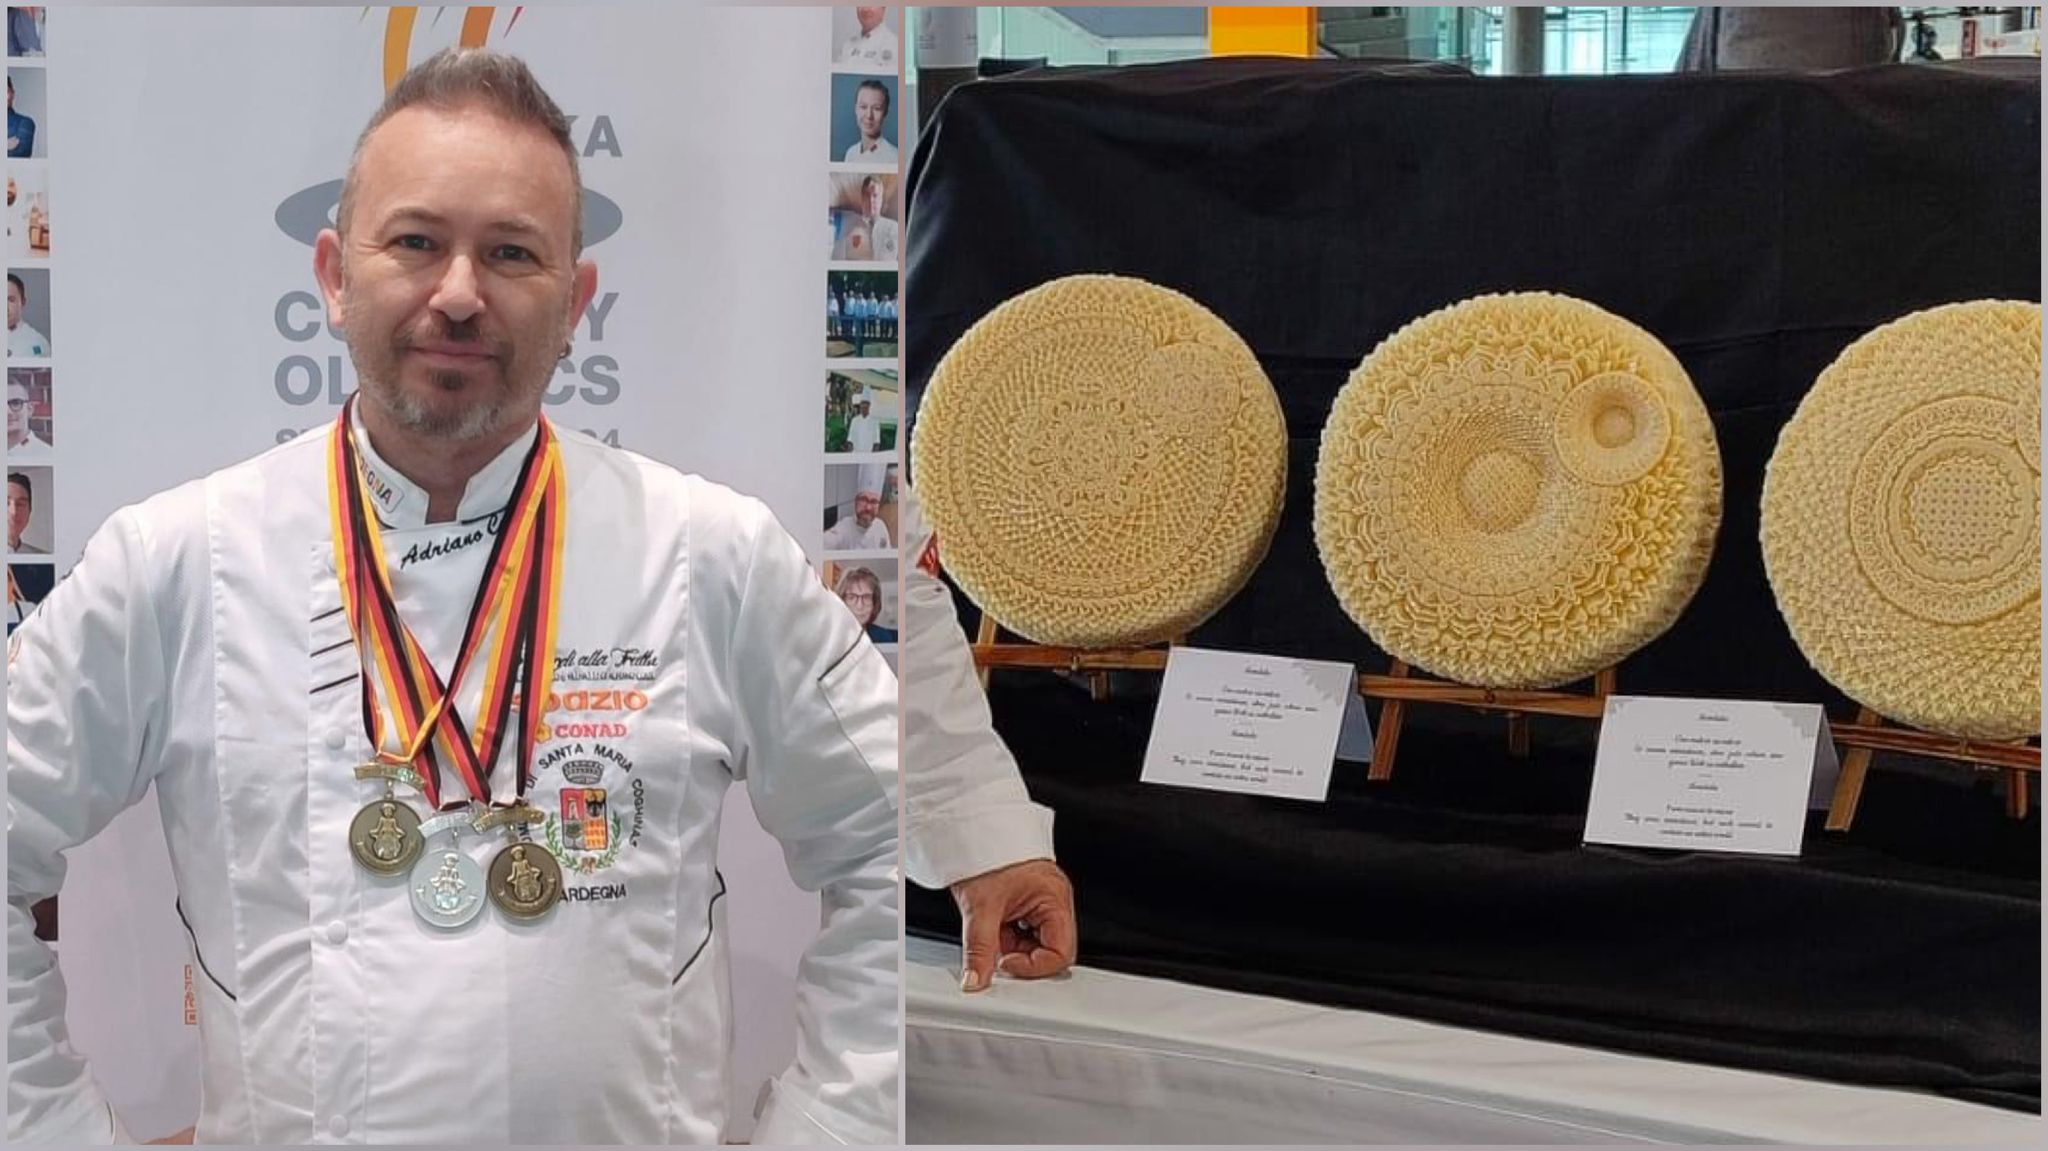 Adriano Cossu: successo alle Olimpiadi della cucina artistica